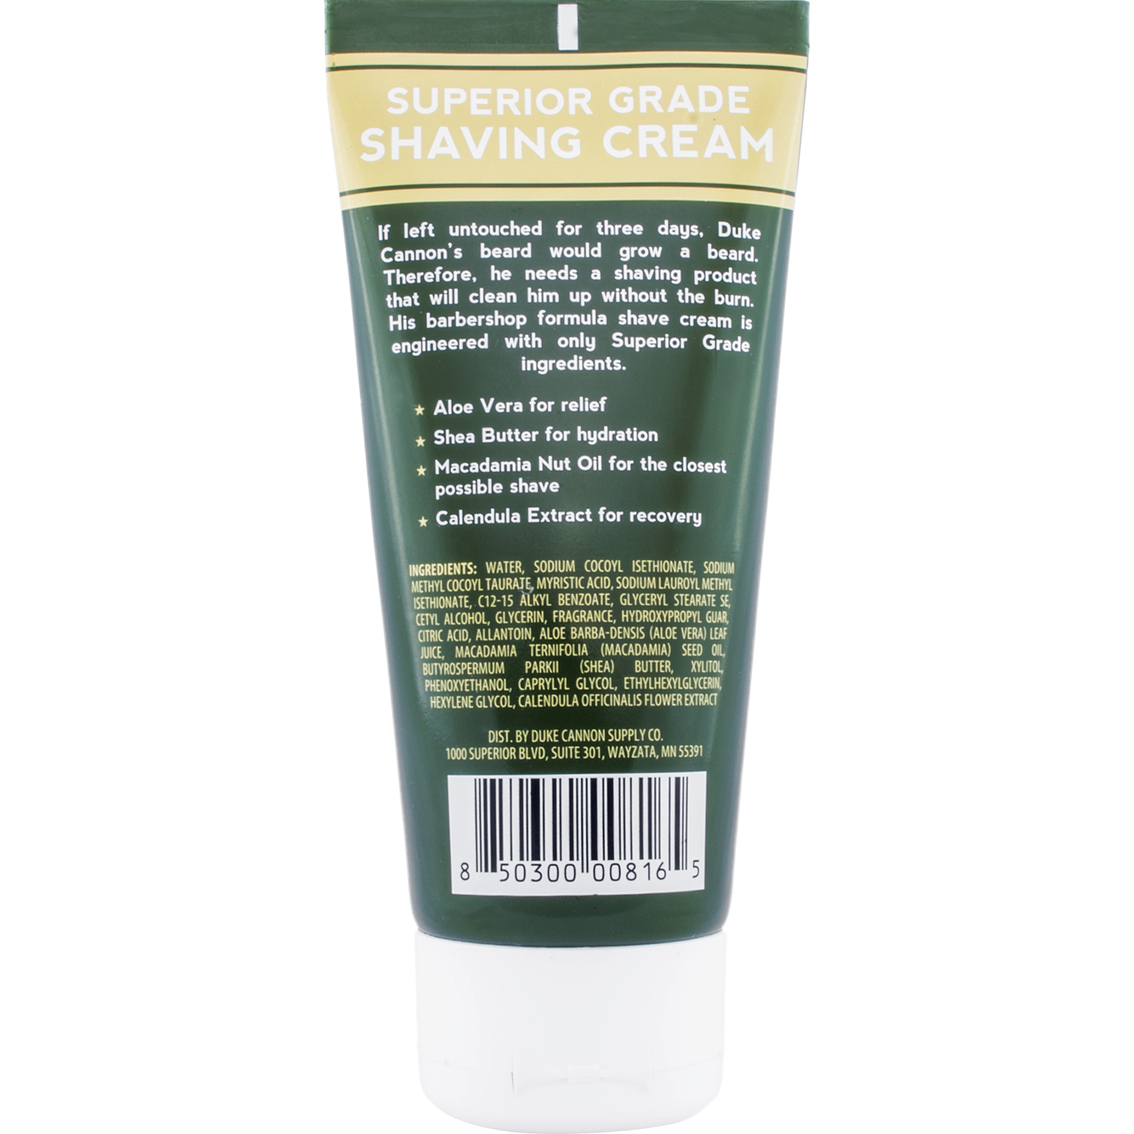 Duke Cannon Superior Grade Travel Size Shave Cream - Image 2 of 2